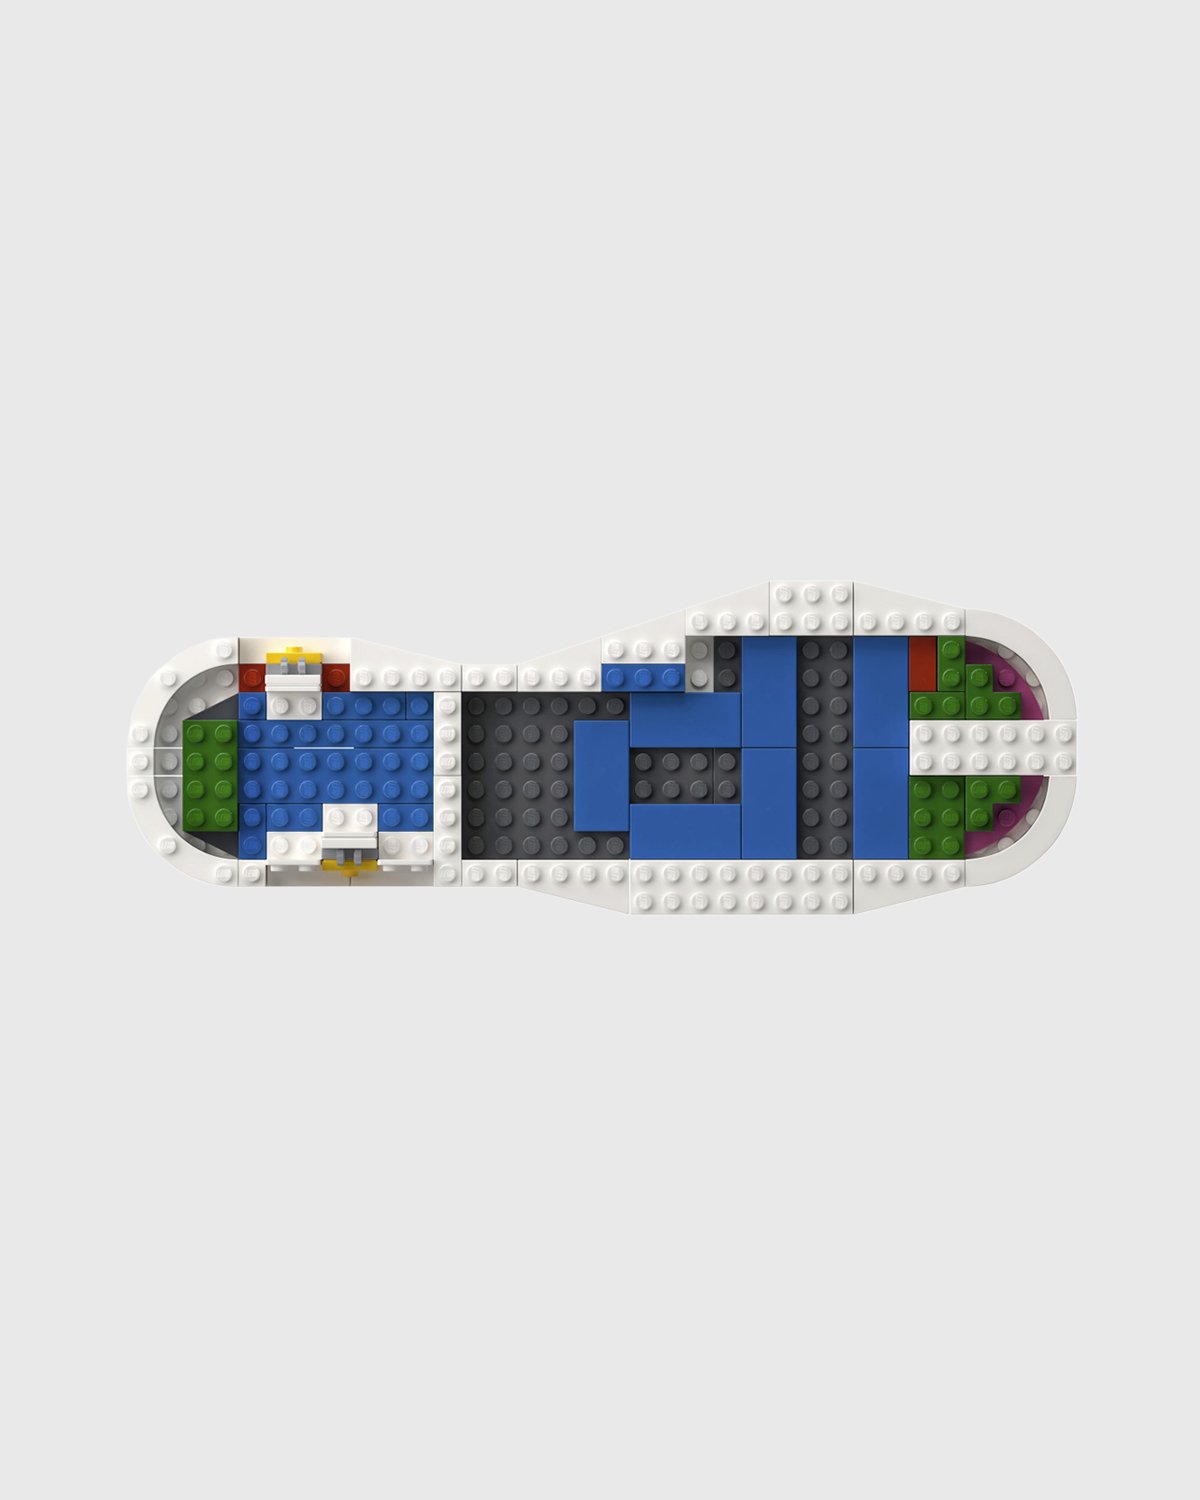 Lego - Icons adidas Originals Superstar White - Lifestyle - White - Image 3